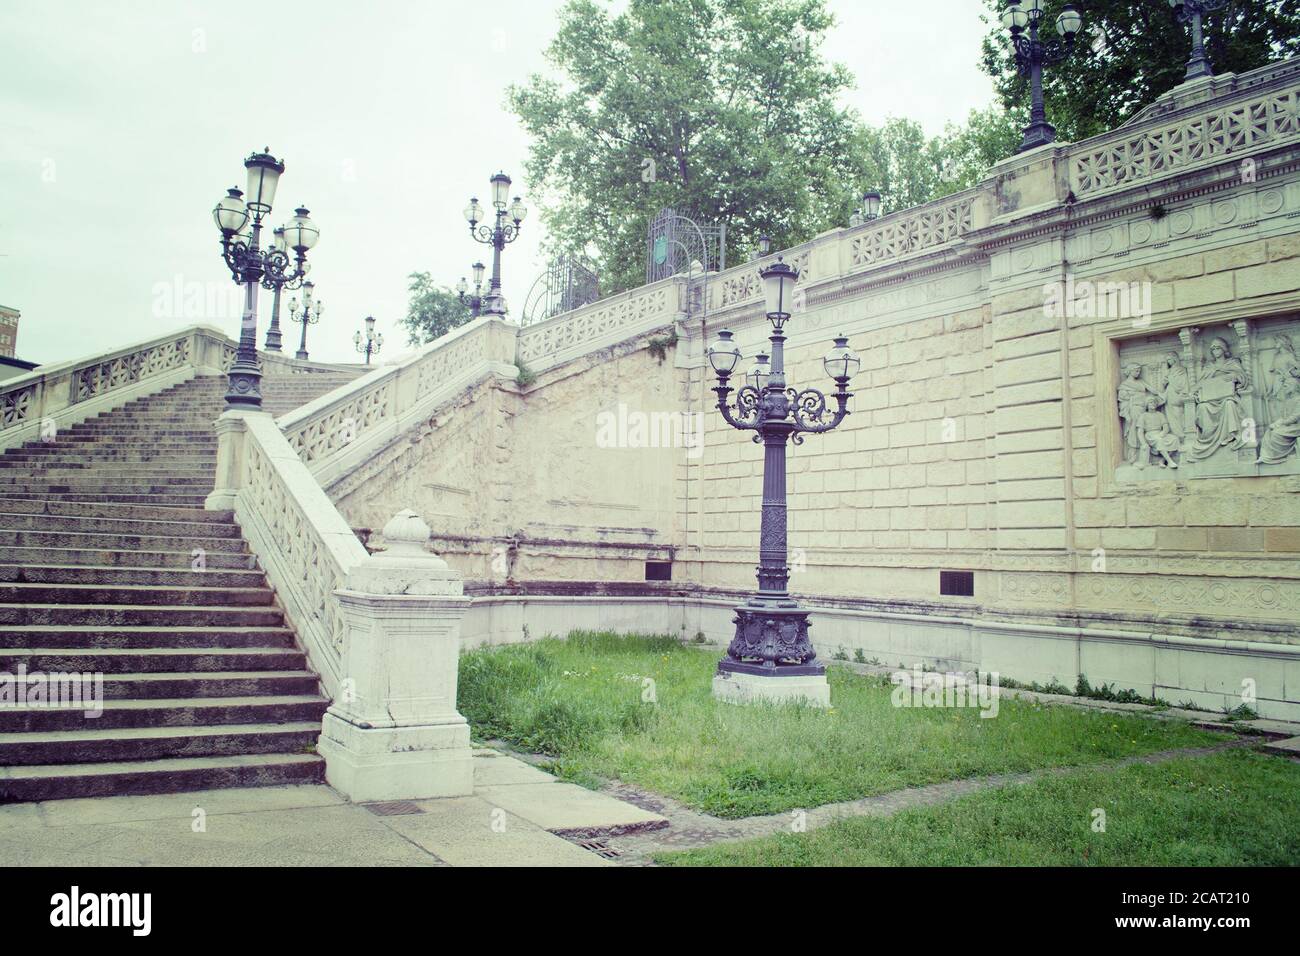 Lampadaire et escaliers dans le parc de Montagnola à Bologne, Italie Banque D'Images